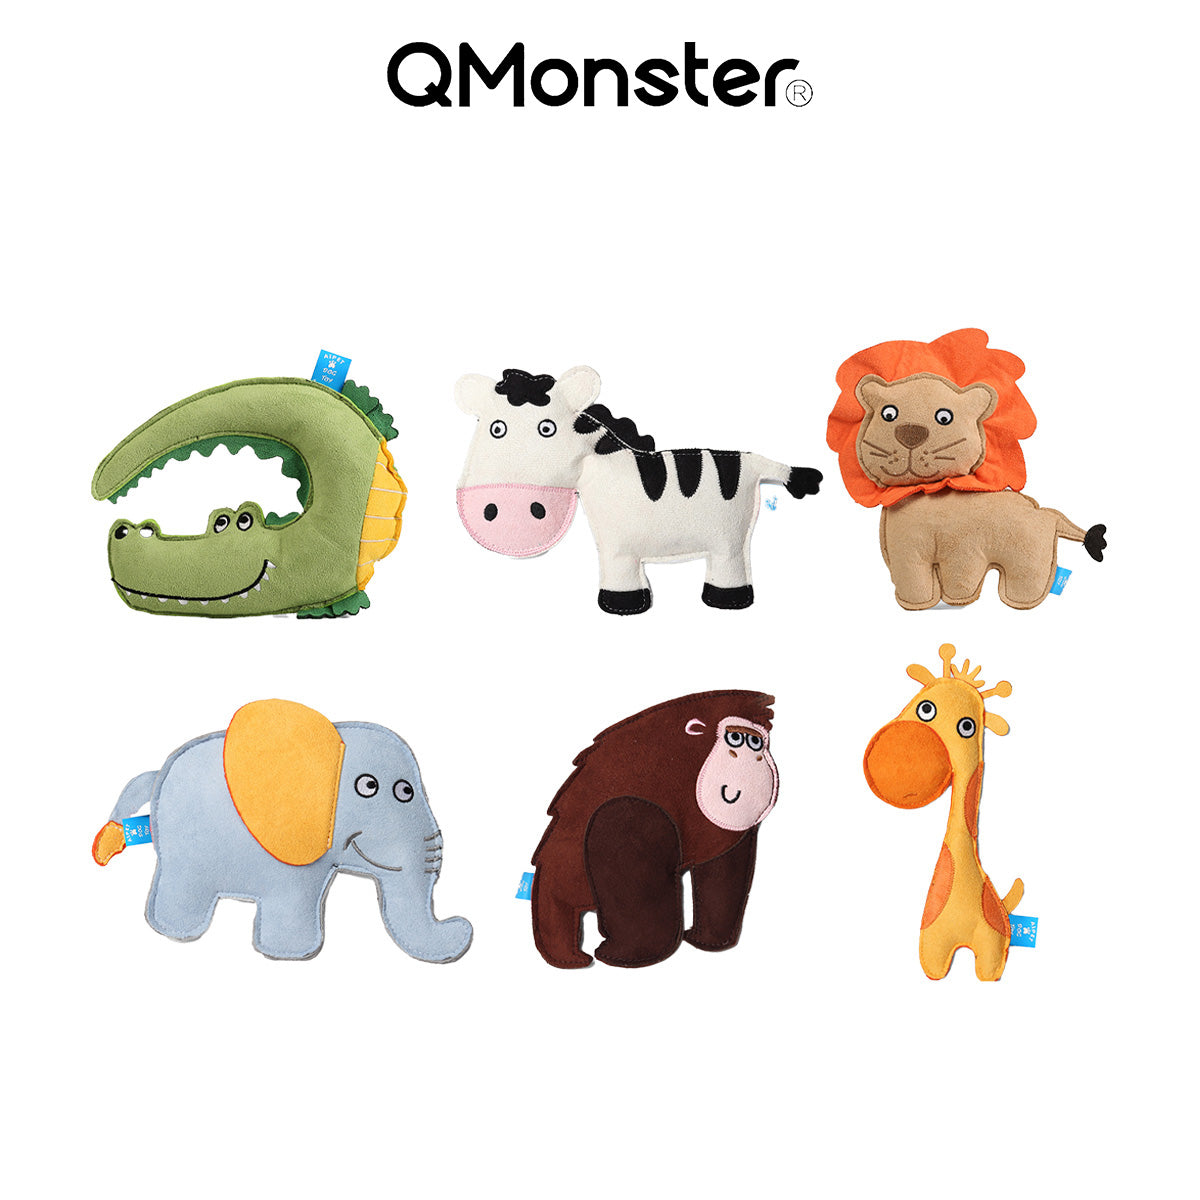 Q-MONSTER 動物園系列 發聲玩具